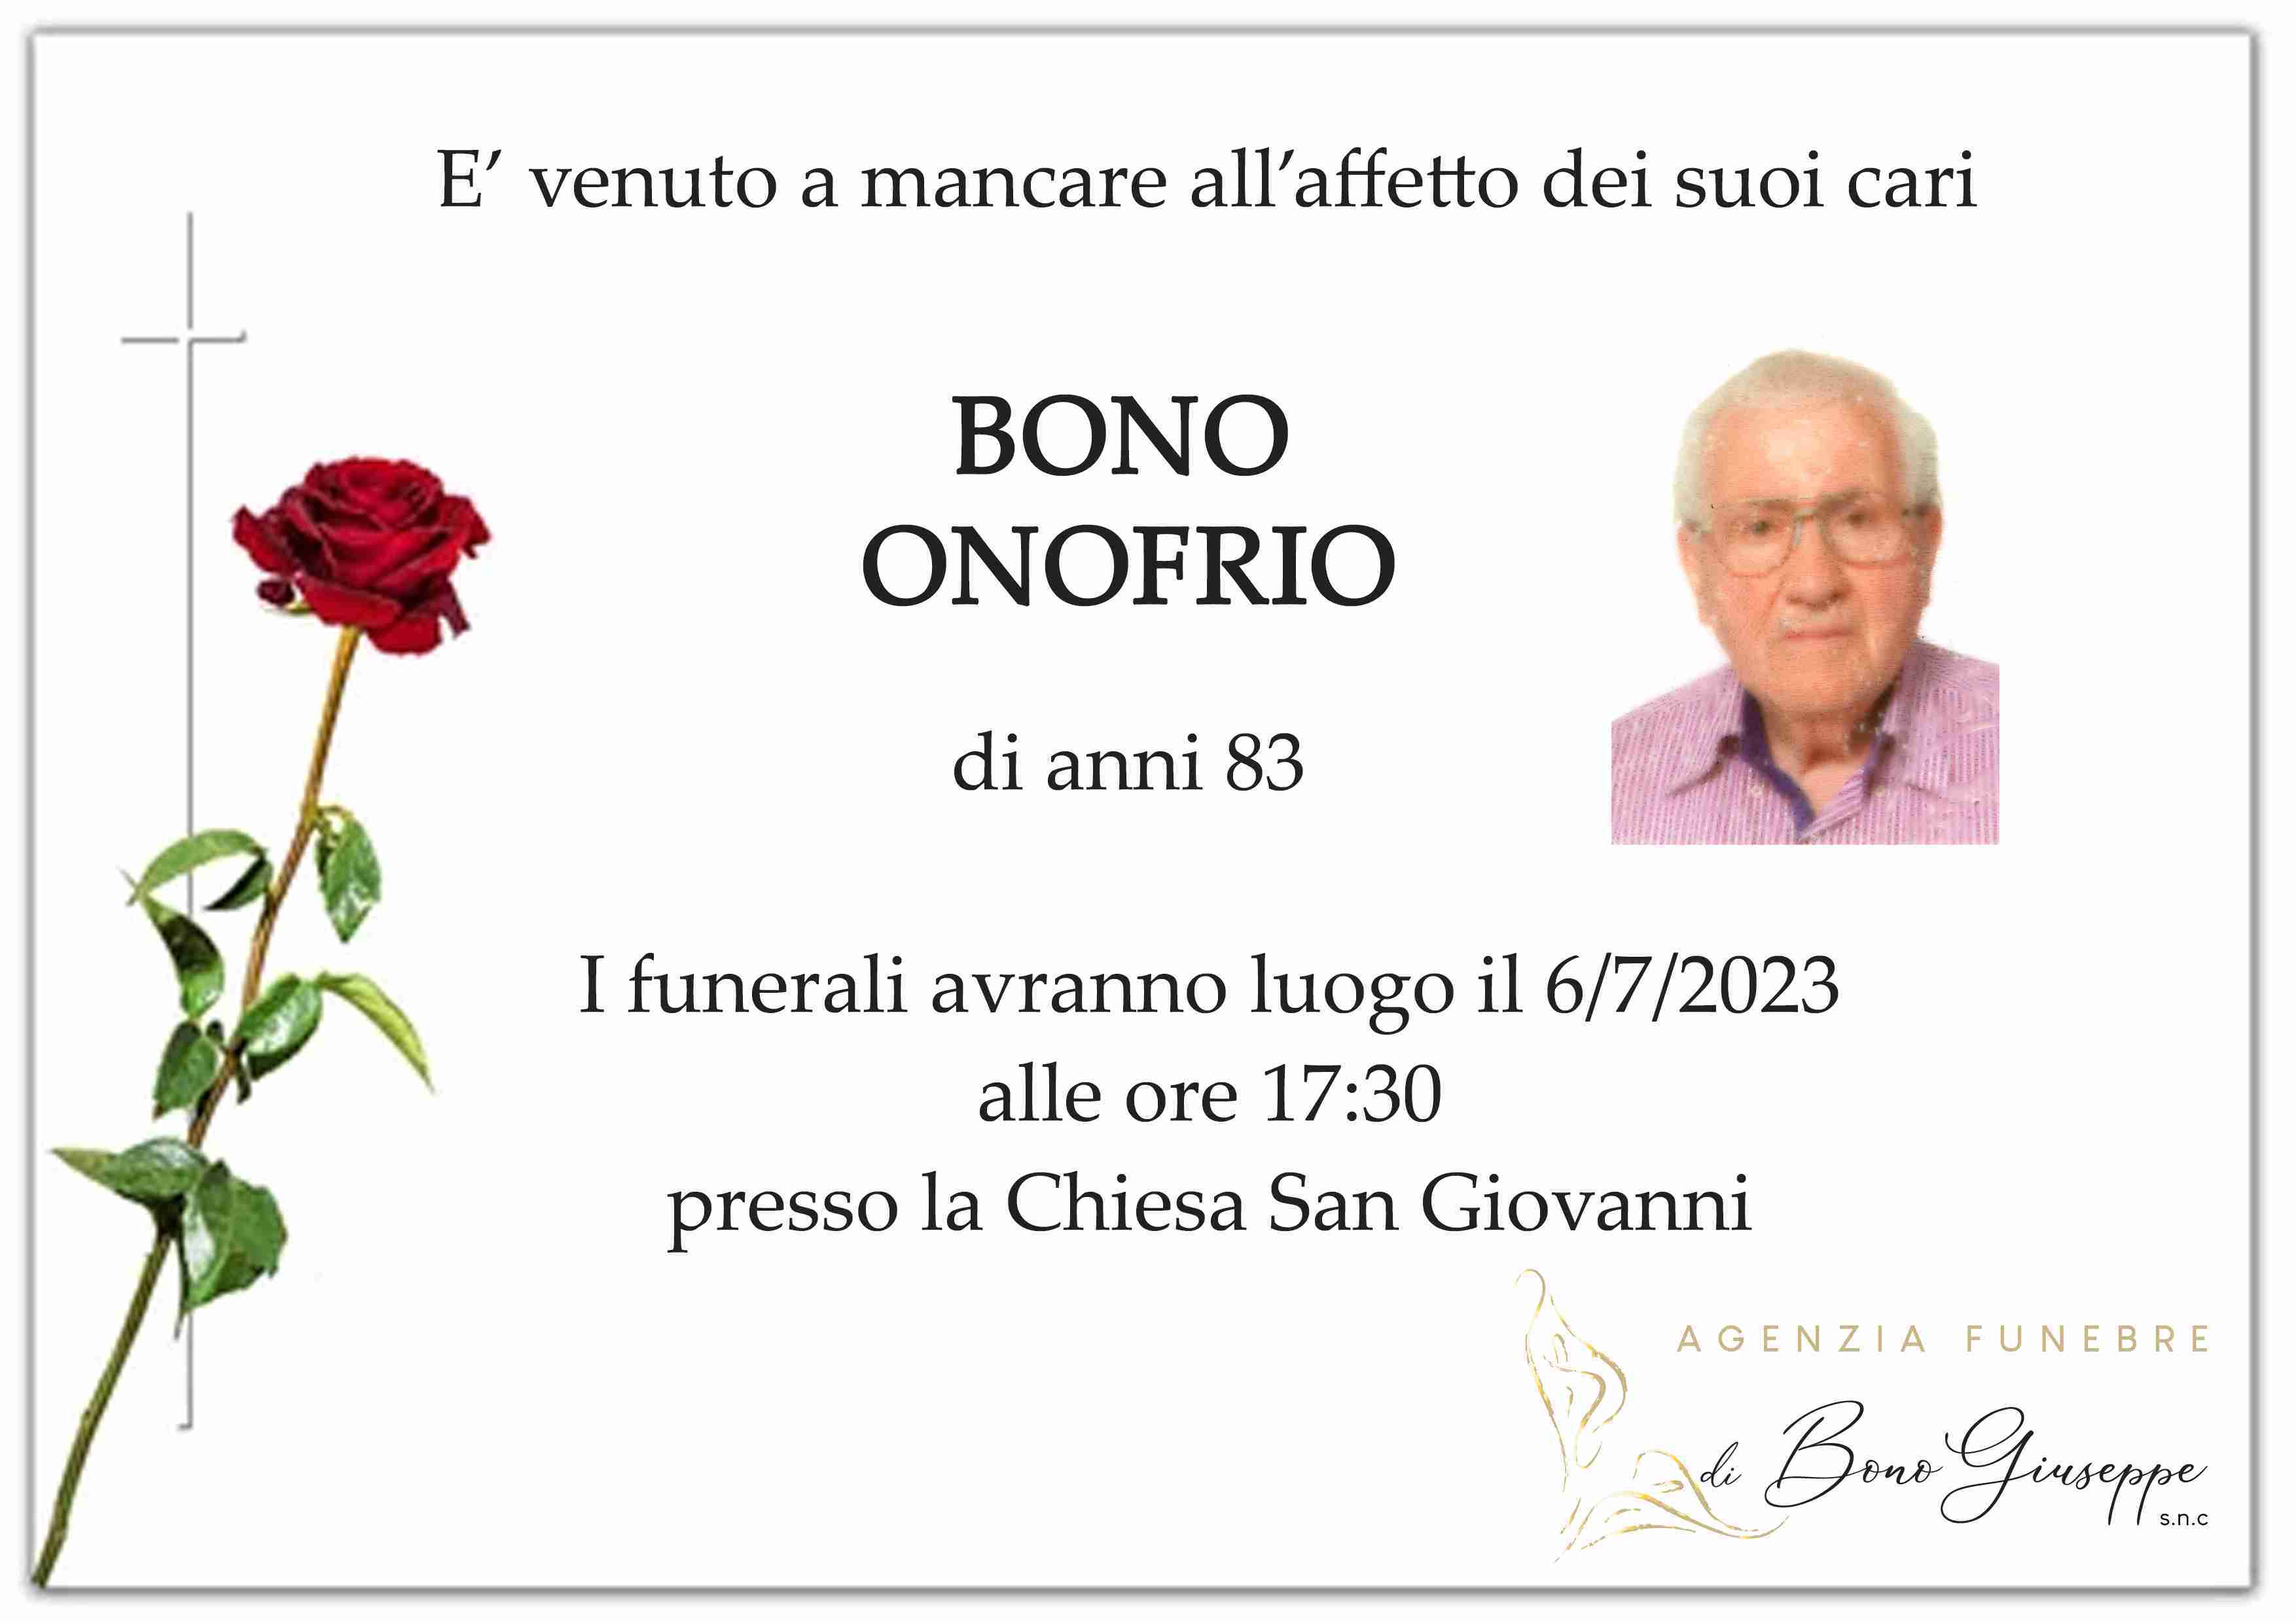 Onofrio Bono